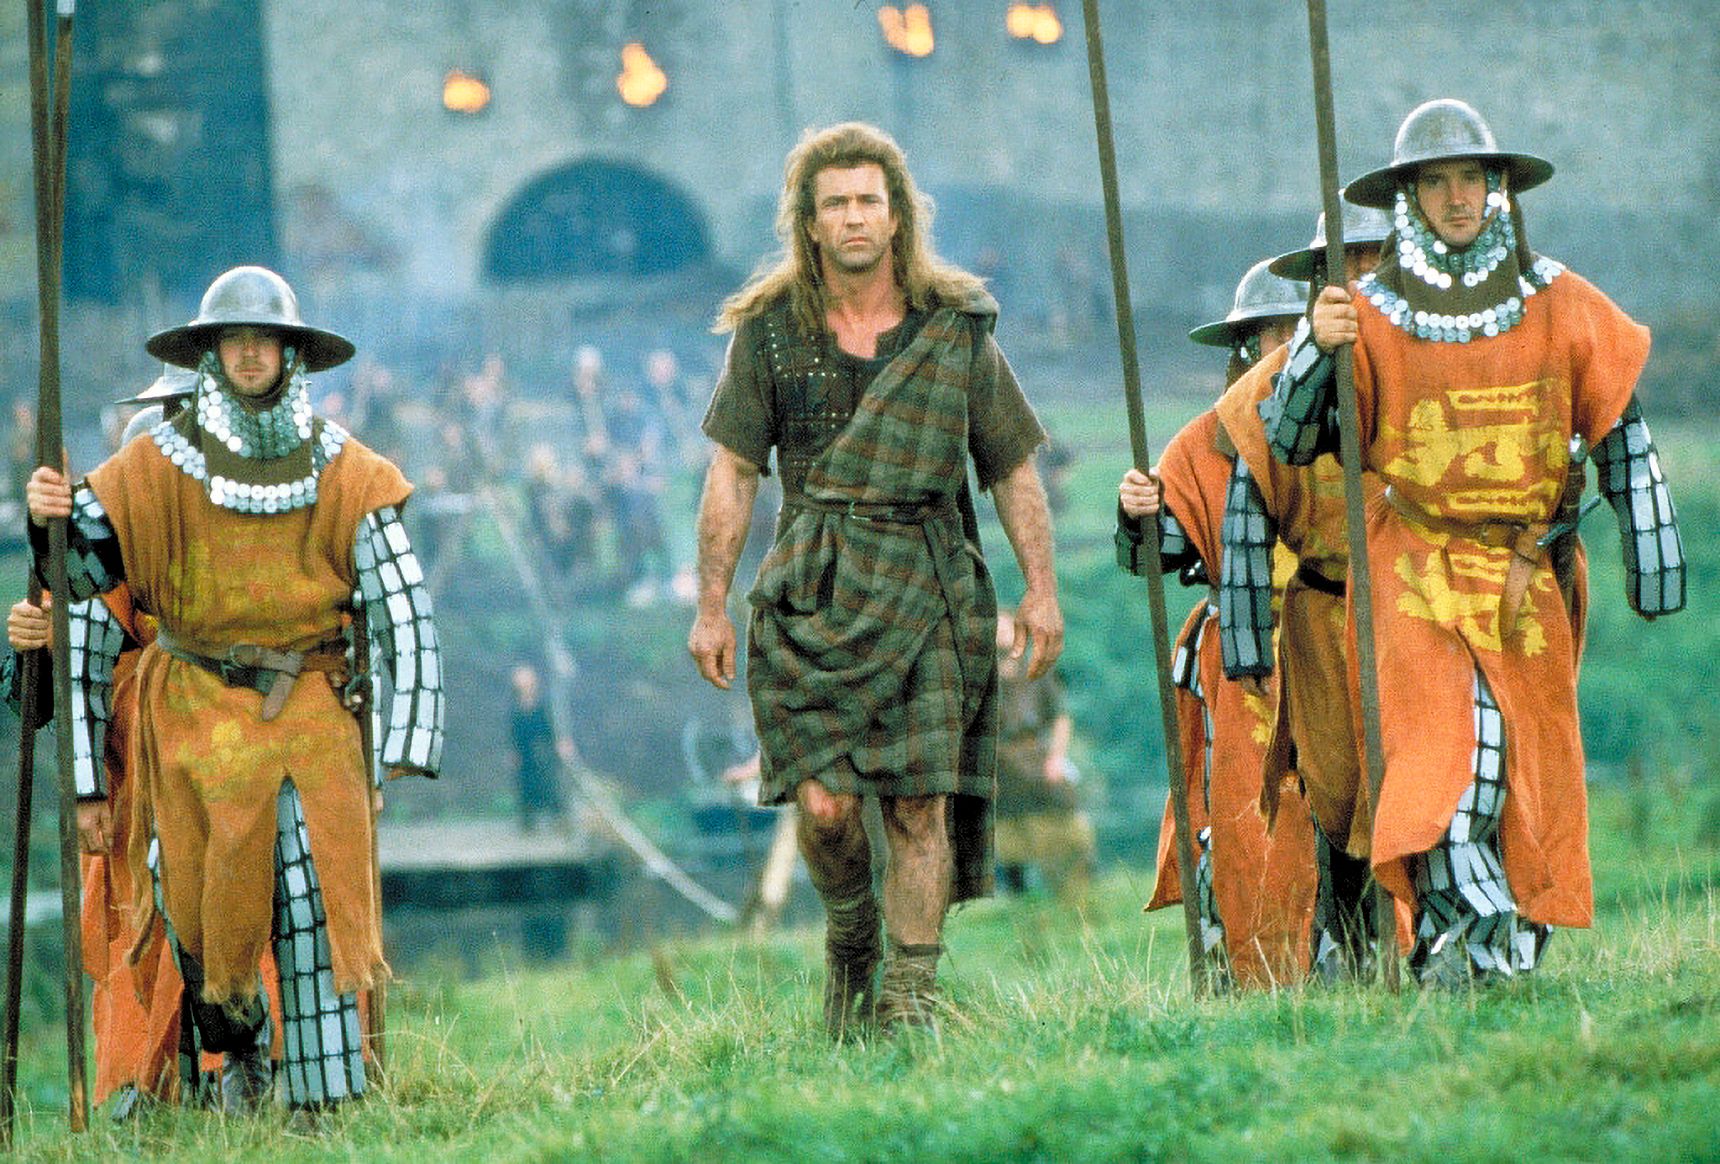 Mel Gibsonin esittämä William Wallace oli todellinen skottihistorian hahmo, mutta Braveheart-elokuvalla on hyvin vähän tekemistä todellisten tapahtumien kulun kanssa. © STELLA Pictures / Splash News